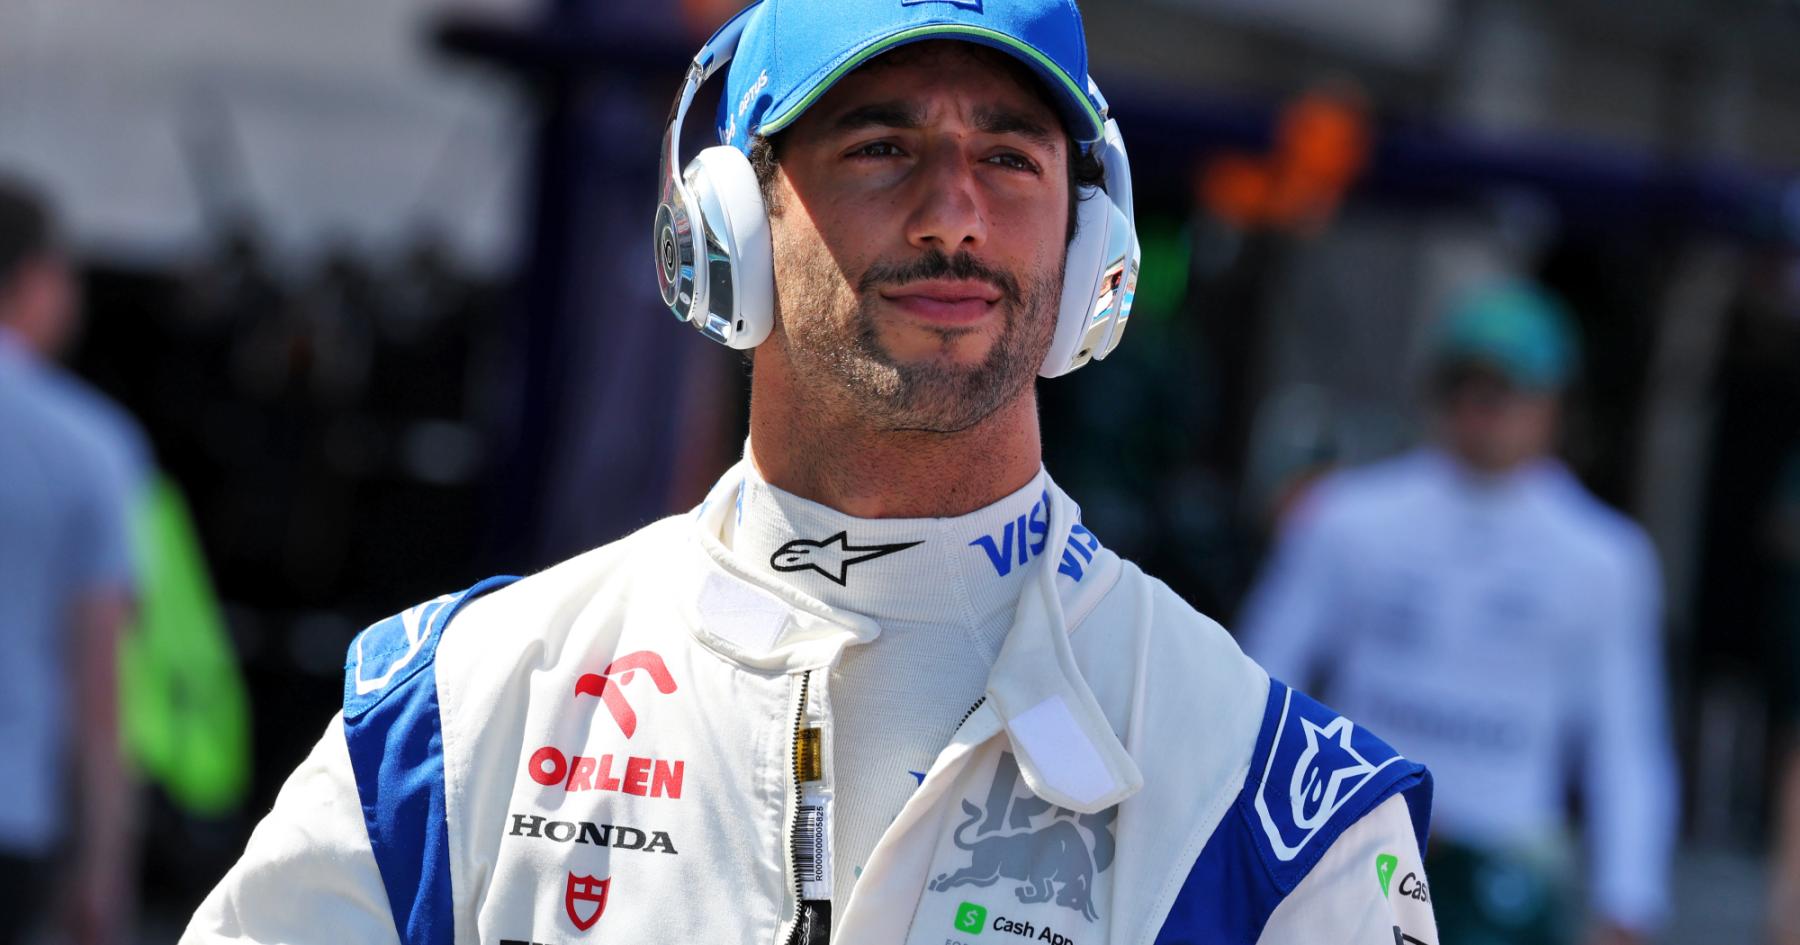 Ricciardo Roars into Action: A Bold Move for Success at China Grand Prix